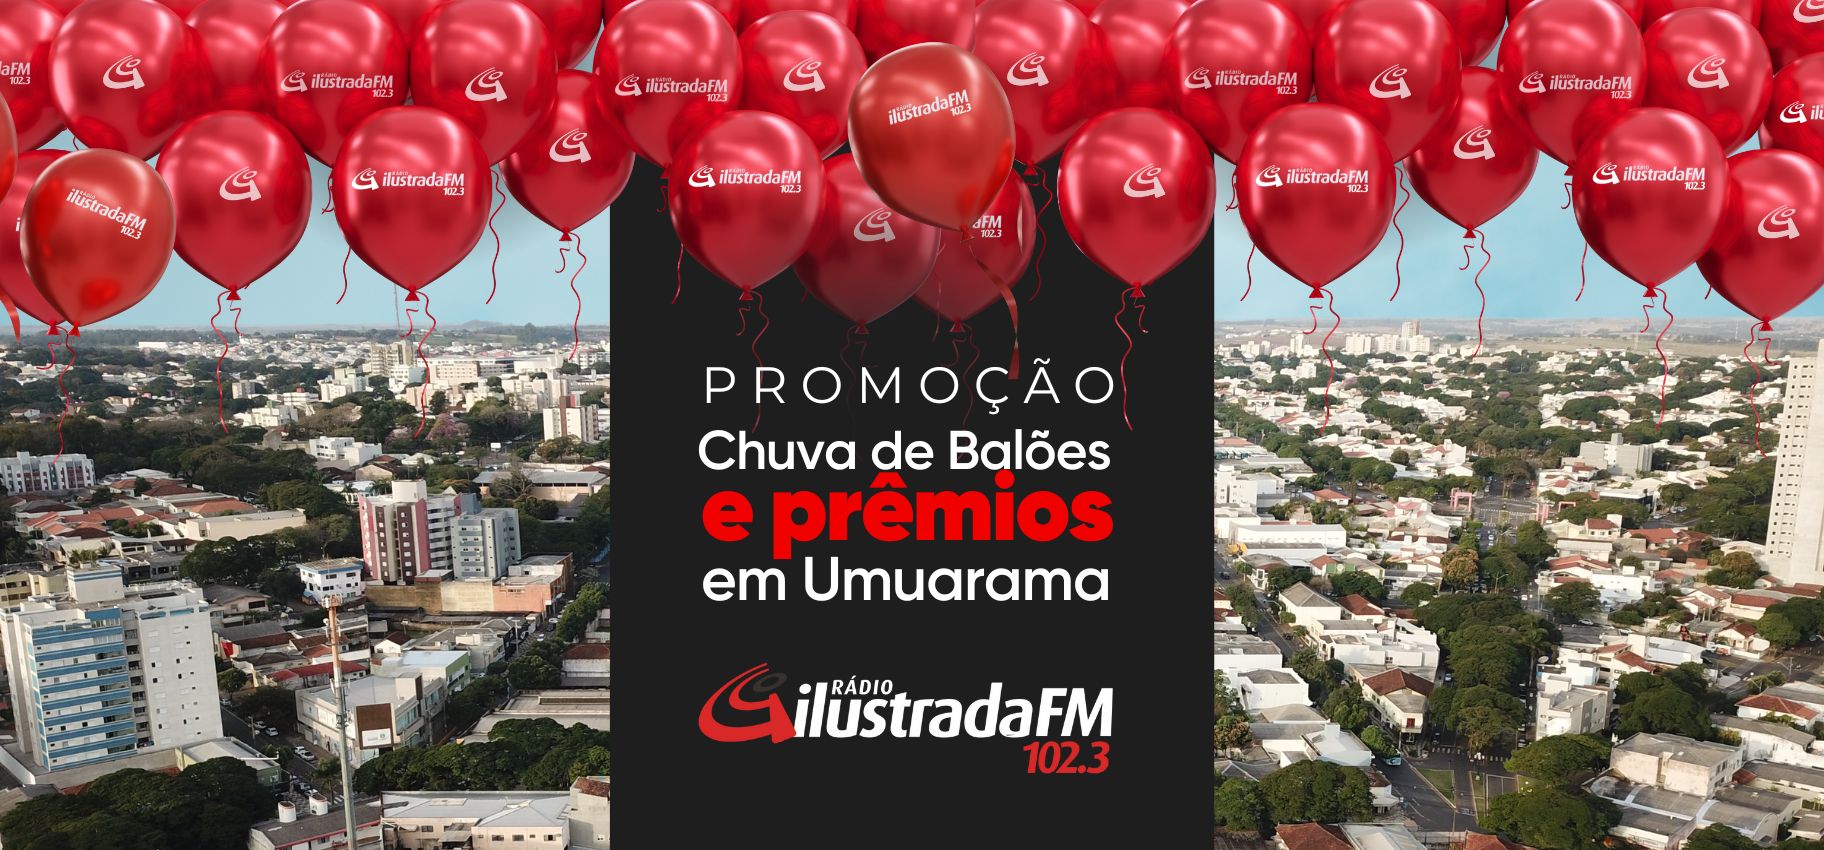 Promoção Rádio Ilustrada FM Chuva de Balões